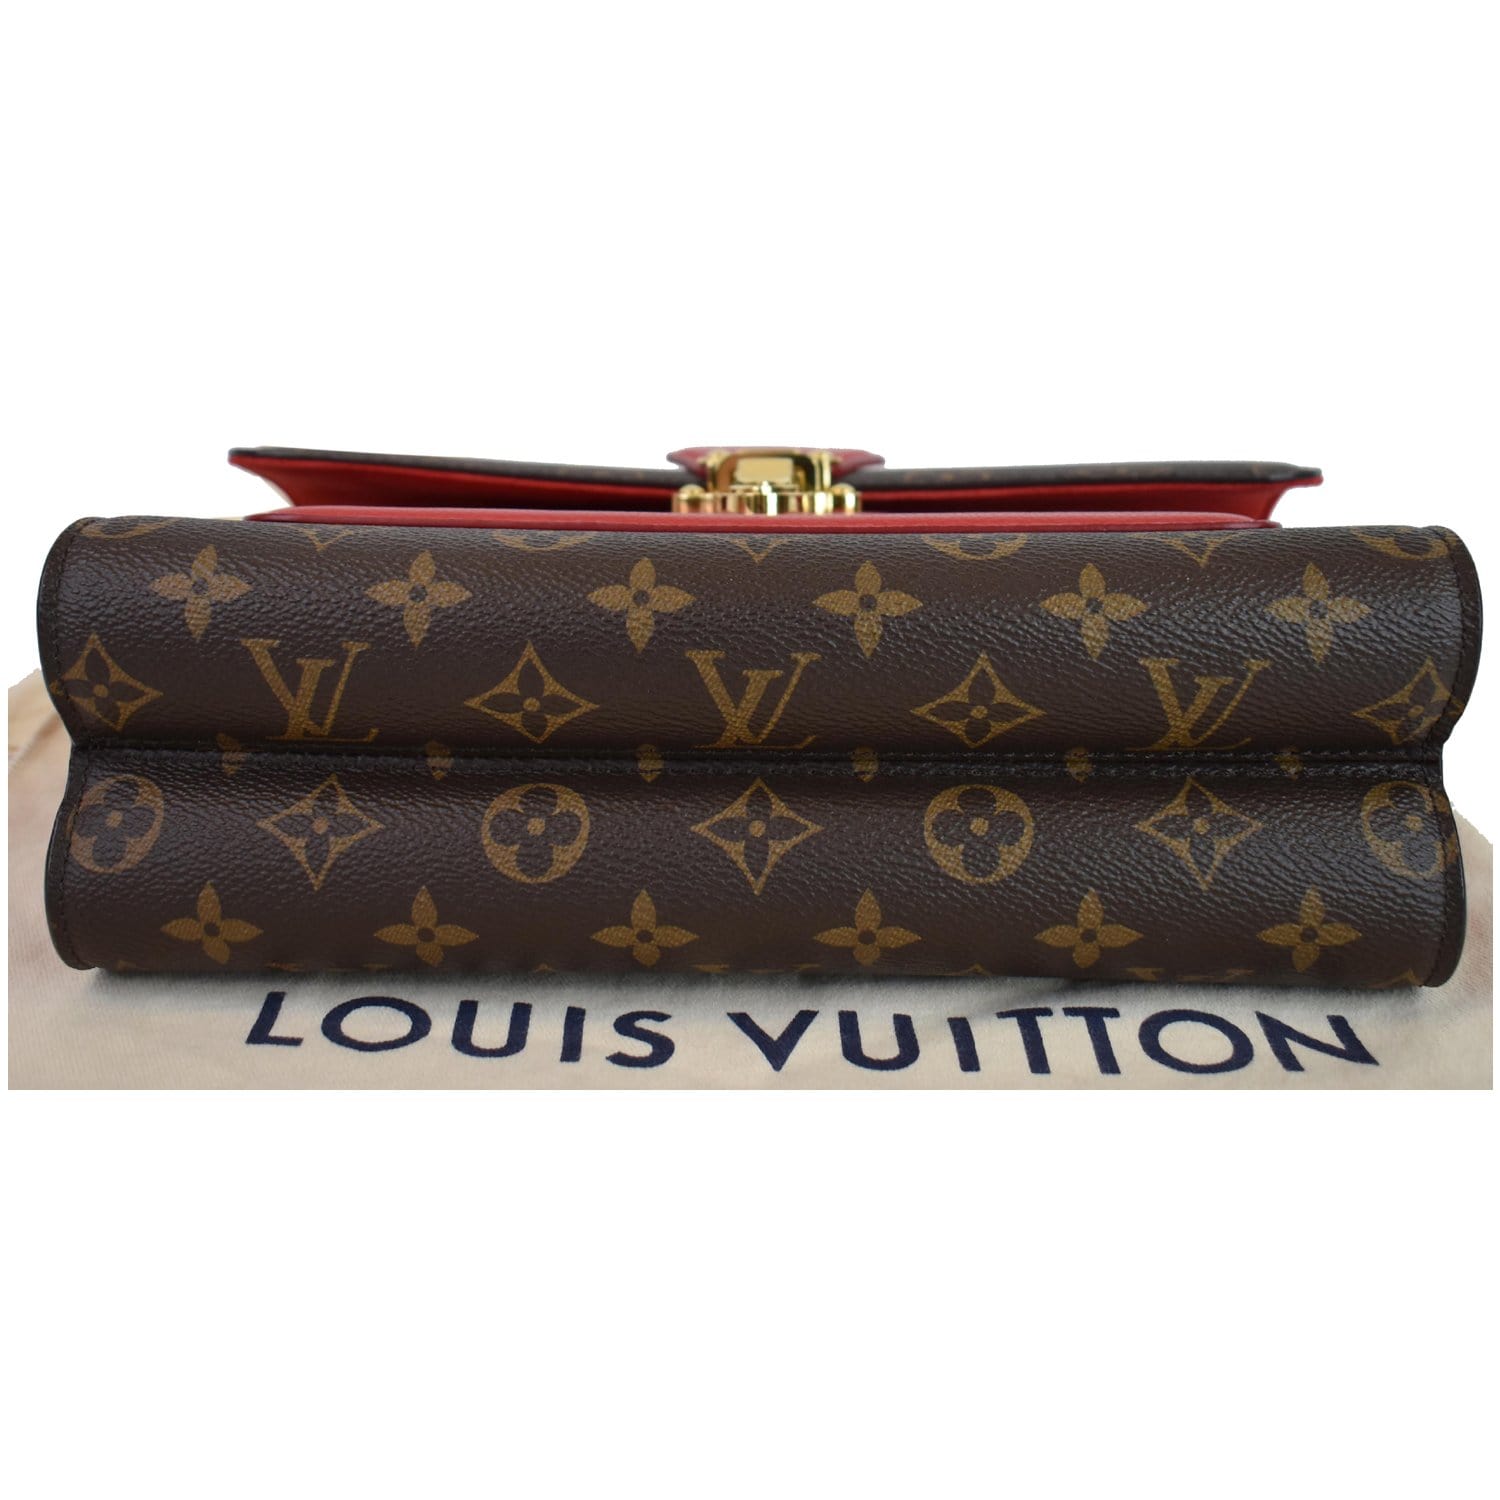 Louis Vuitton - Victoire - Monogram Canvas